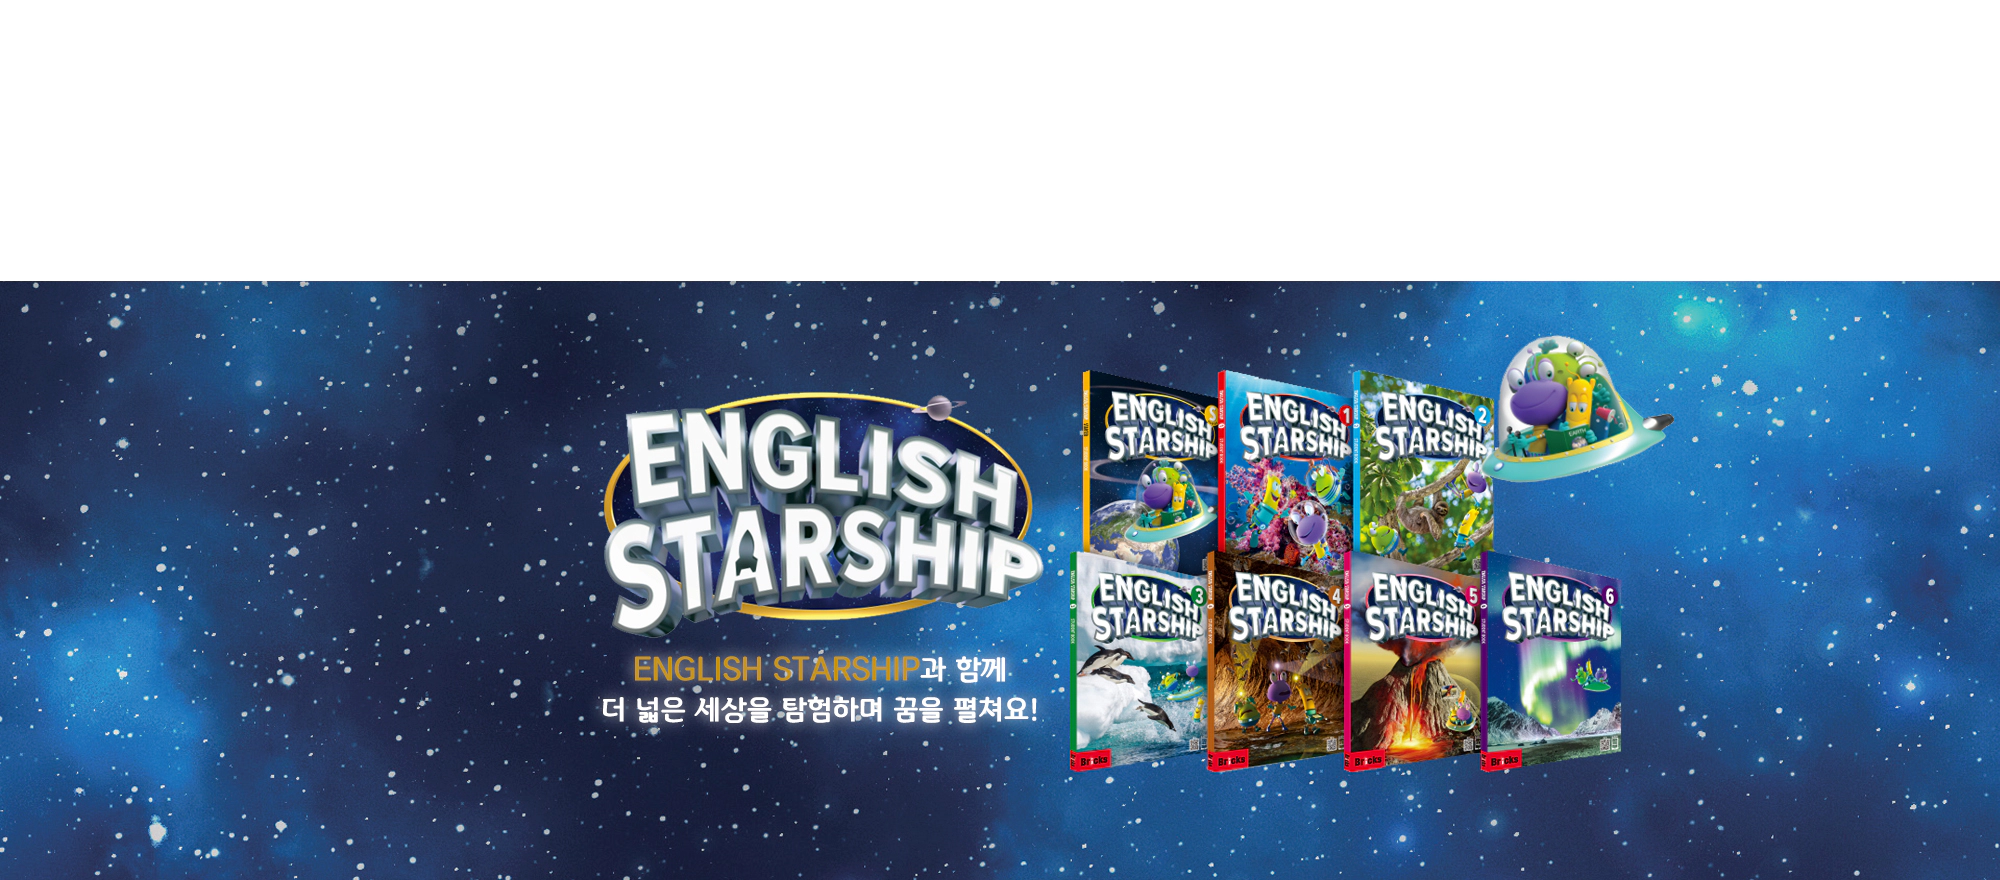 English Starship